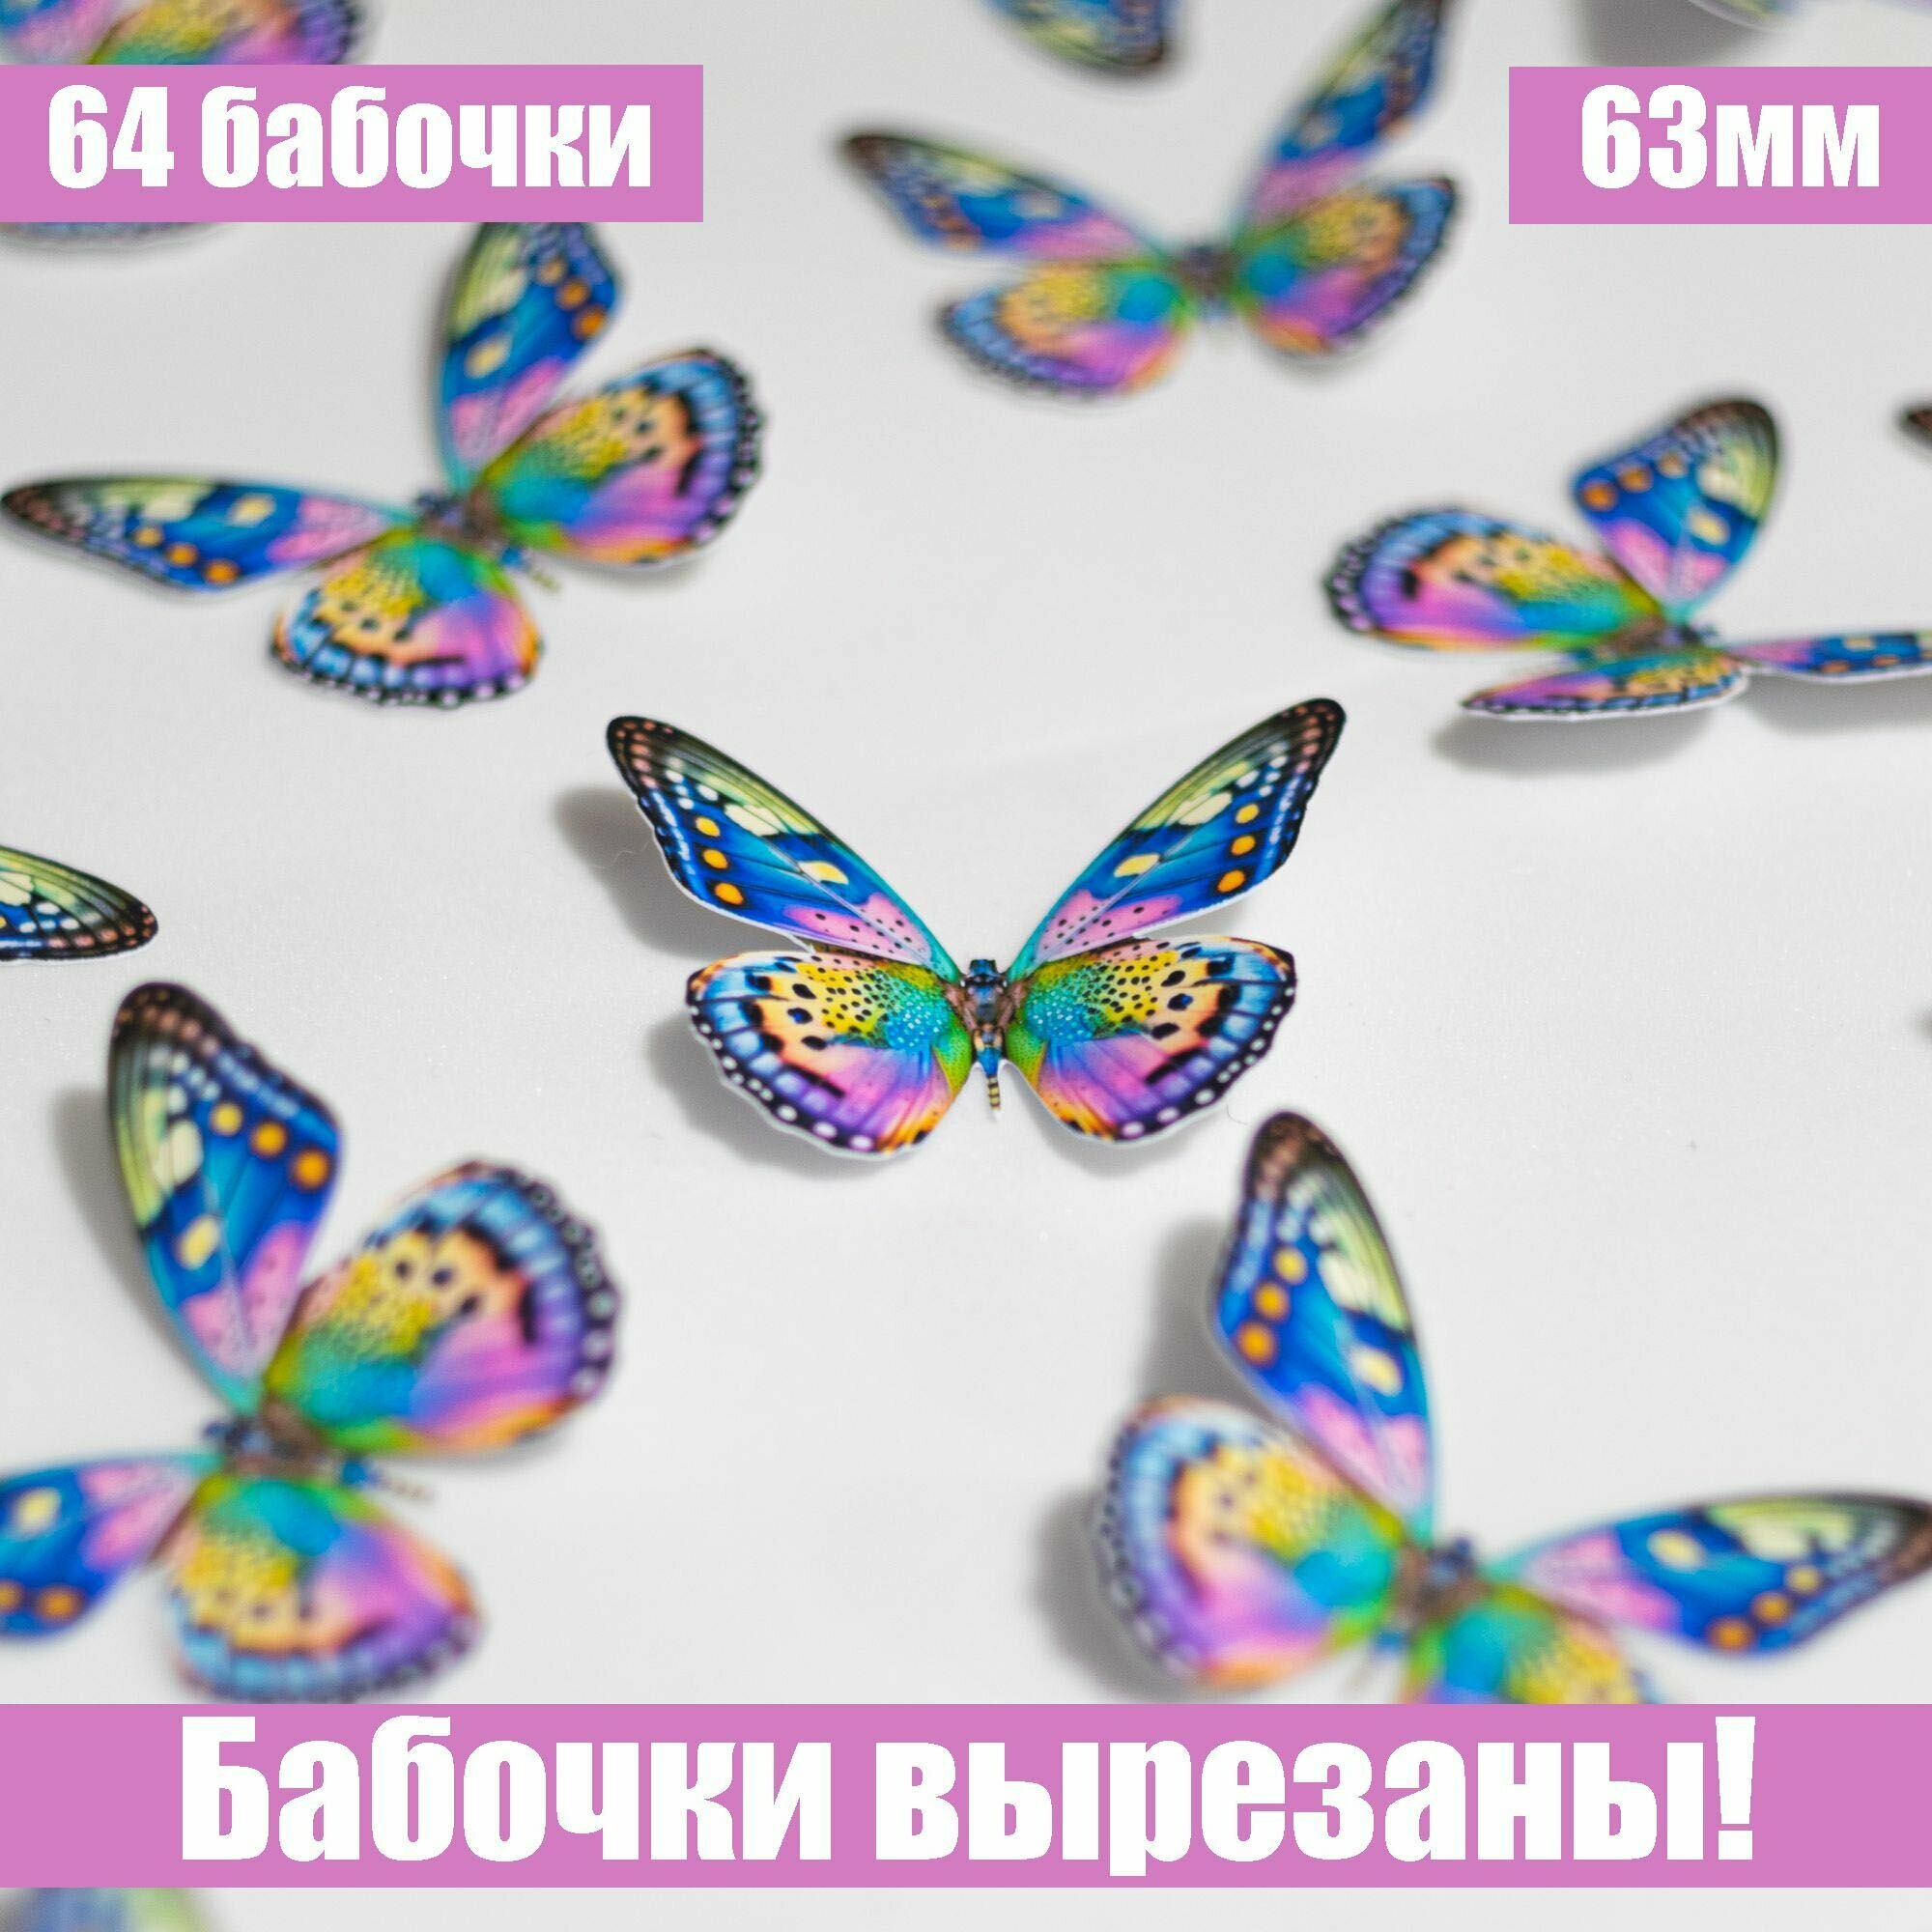 Бабочки на глянцевой фотобумаге для создания букетов из бабочек и композиций